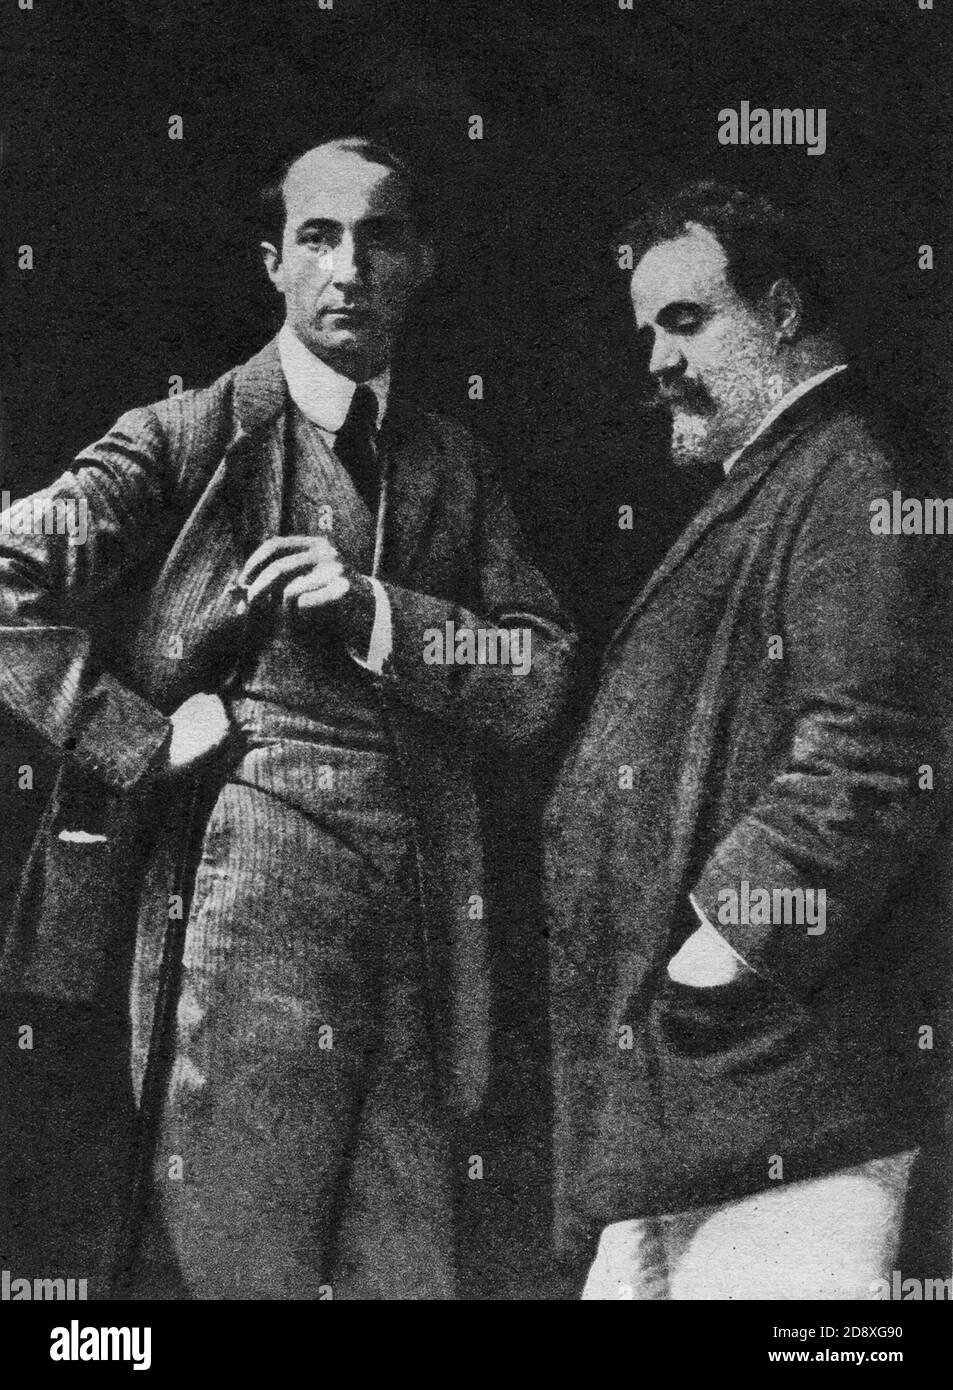 1909 : il pittore e scrittore italiano ARDENGO SOFFICI ( 1879 - 1964 ) con IL celebre scultore MEDARDO ROSSO ( 1858 - 1928 ) - LETTERATURA - LETTERATURA - POESIA - POESIA - SCULTORE - SCULTORE - ARTE ---- Archivio GBB Foto Stock